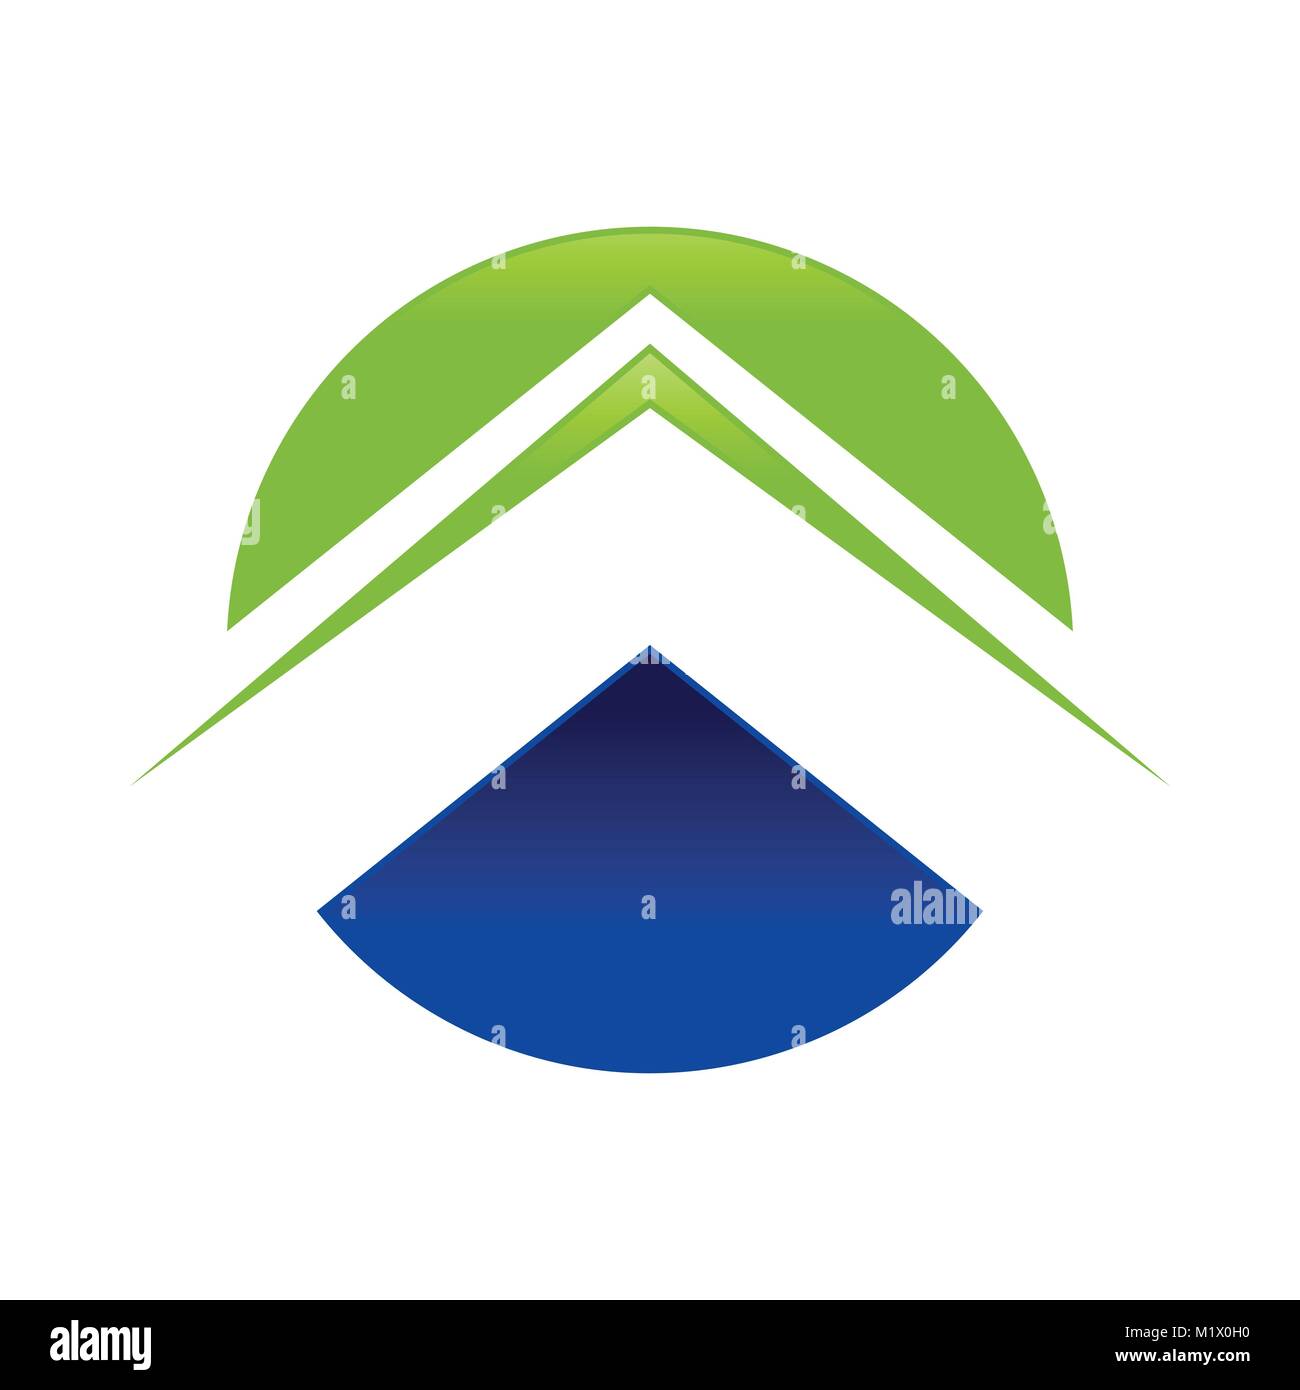 Abstract Circle Arrow Symbol Vector Graphic Logo Design Stock Vector